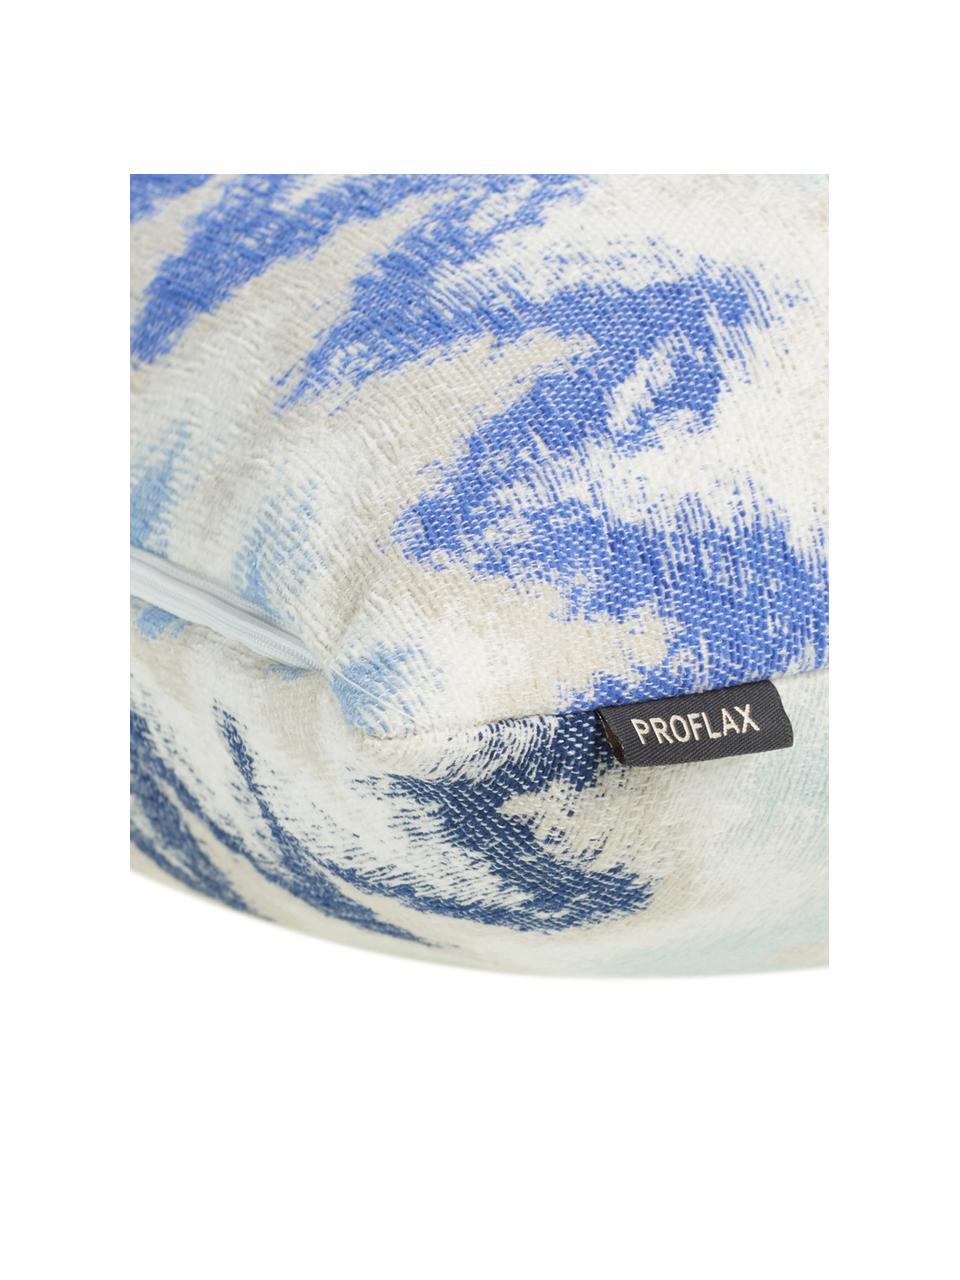 Kissenhülle Pari mit Zickzack-Muster, 100% Polyester, Hellbeige, Blautöne, 45 x 45 cm